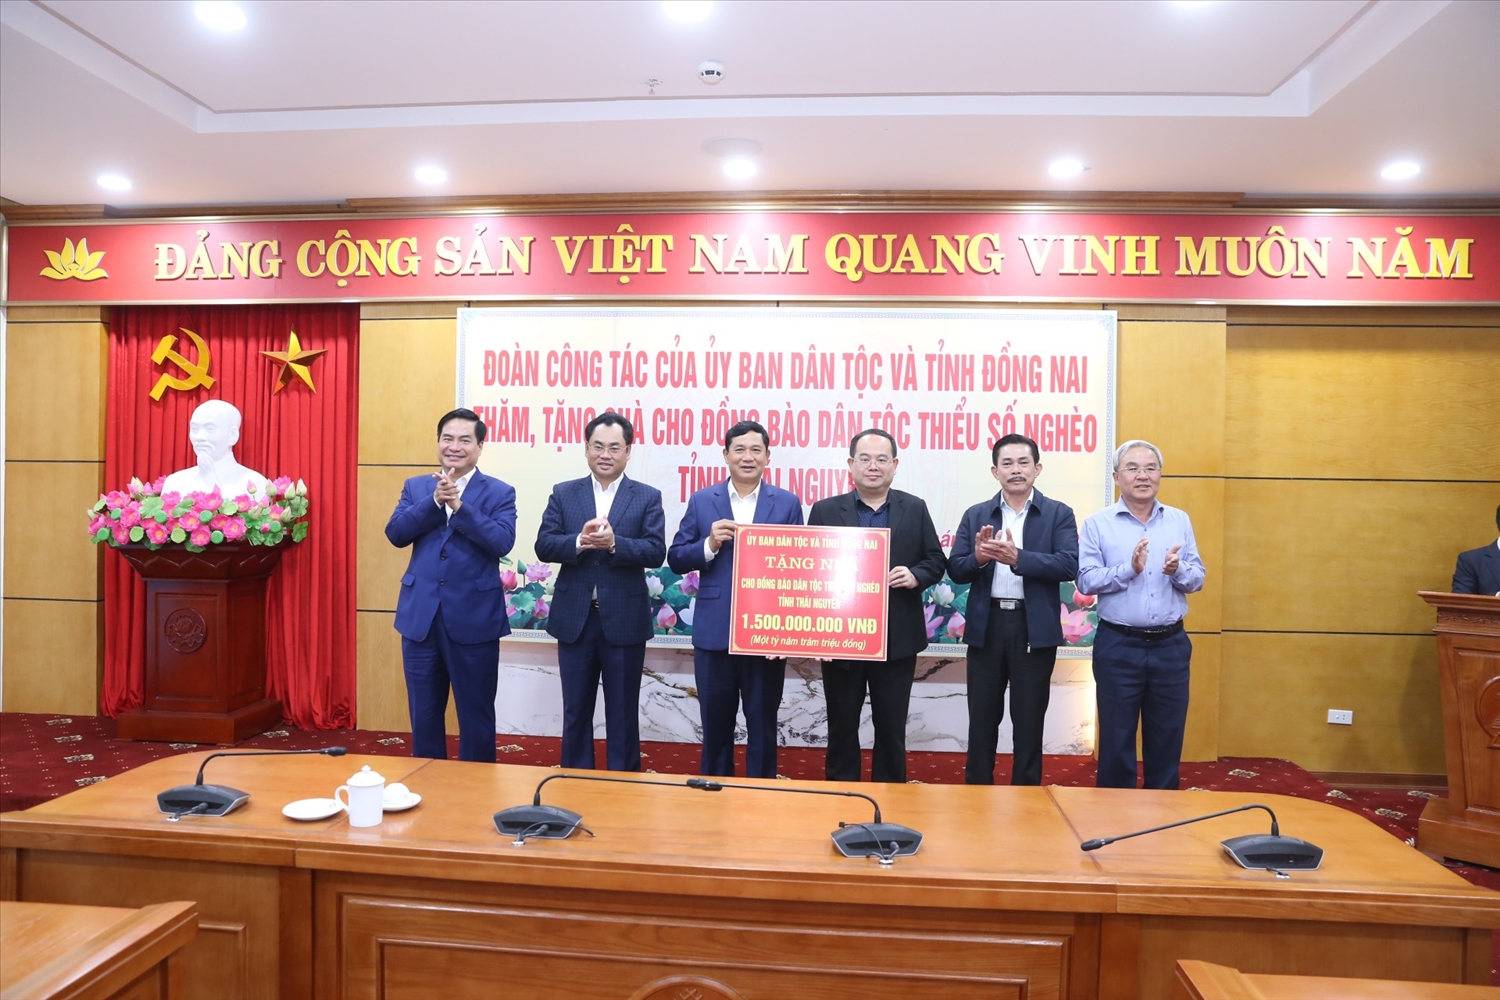 Đoàn công tác Ủy ban Dân tộc và Tỉnh ủy Đồng Nai đã trao hỗ trợ đồng bào DTTS nghèo trên địa bàn tỉnh Thái Nguyên 1,5 tỷ đồng